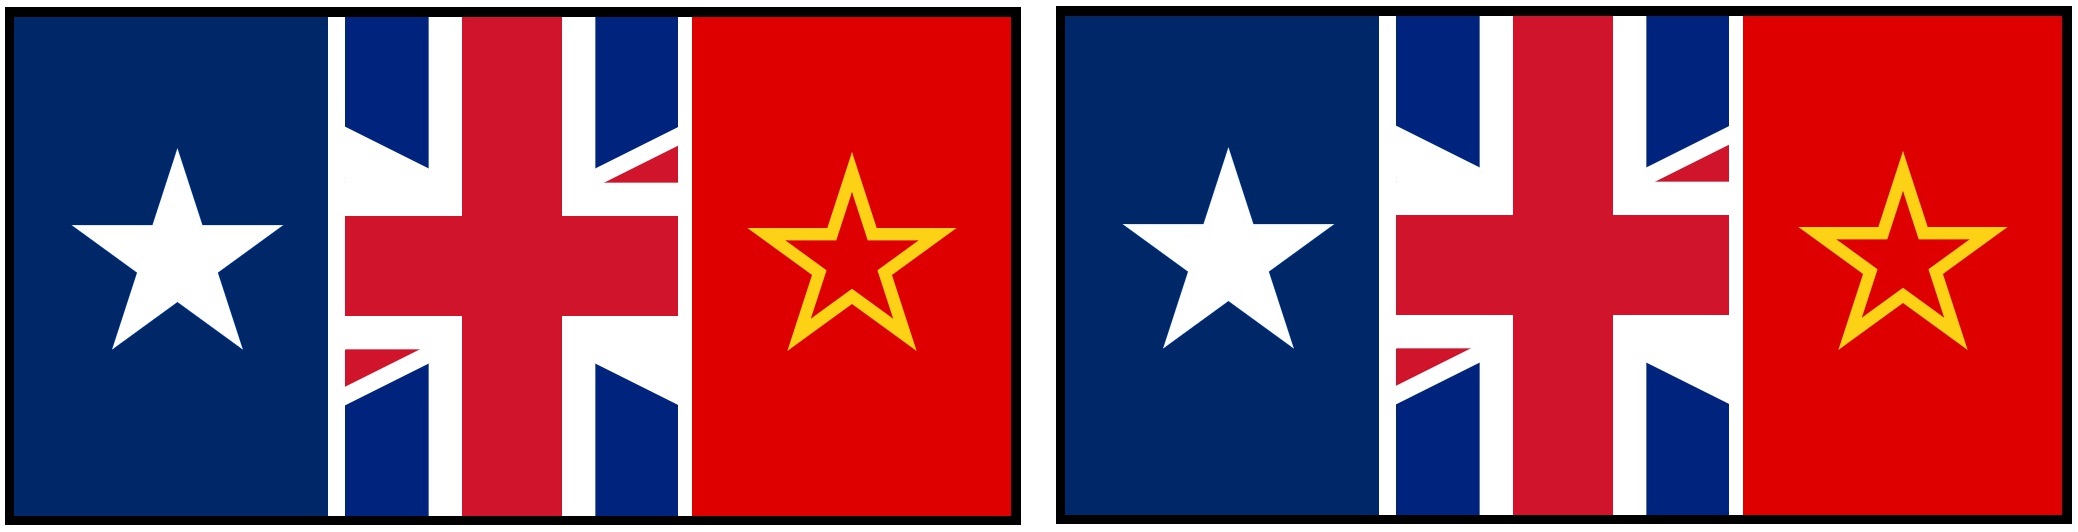 Allied Majors Joint Flag Foldable.jpg